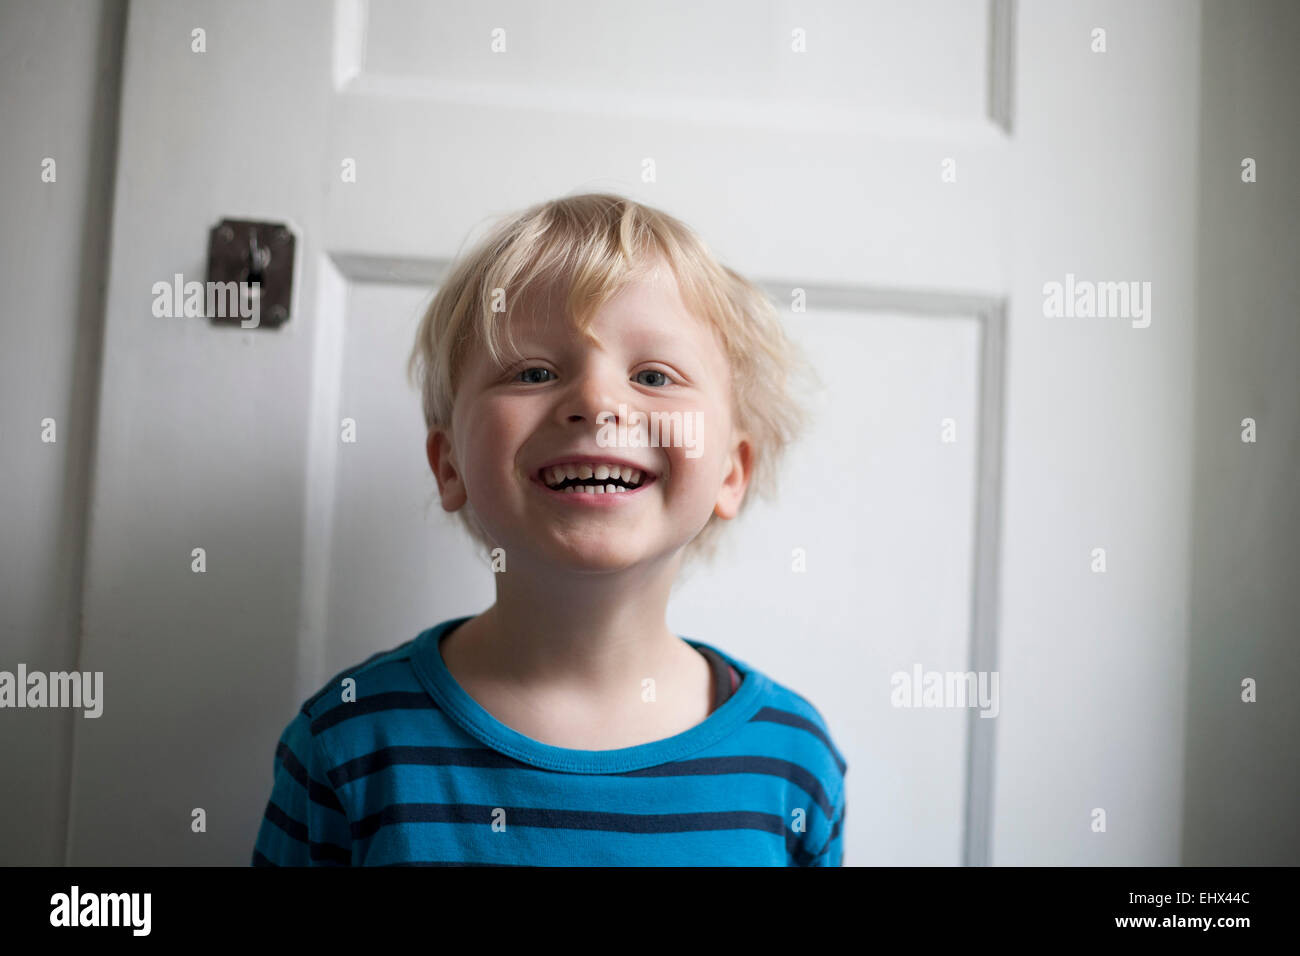 Porträt des lachenden kleinen Jungen vor weiße Tür Stockfoto